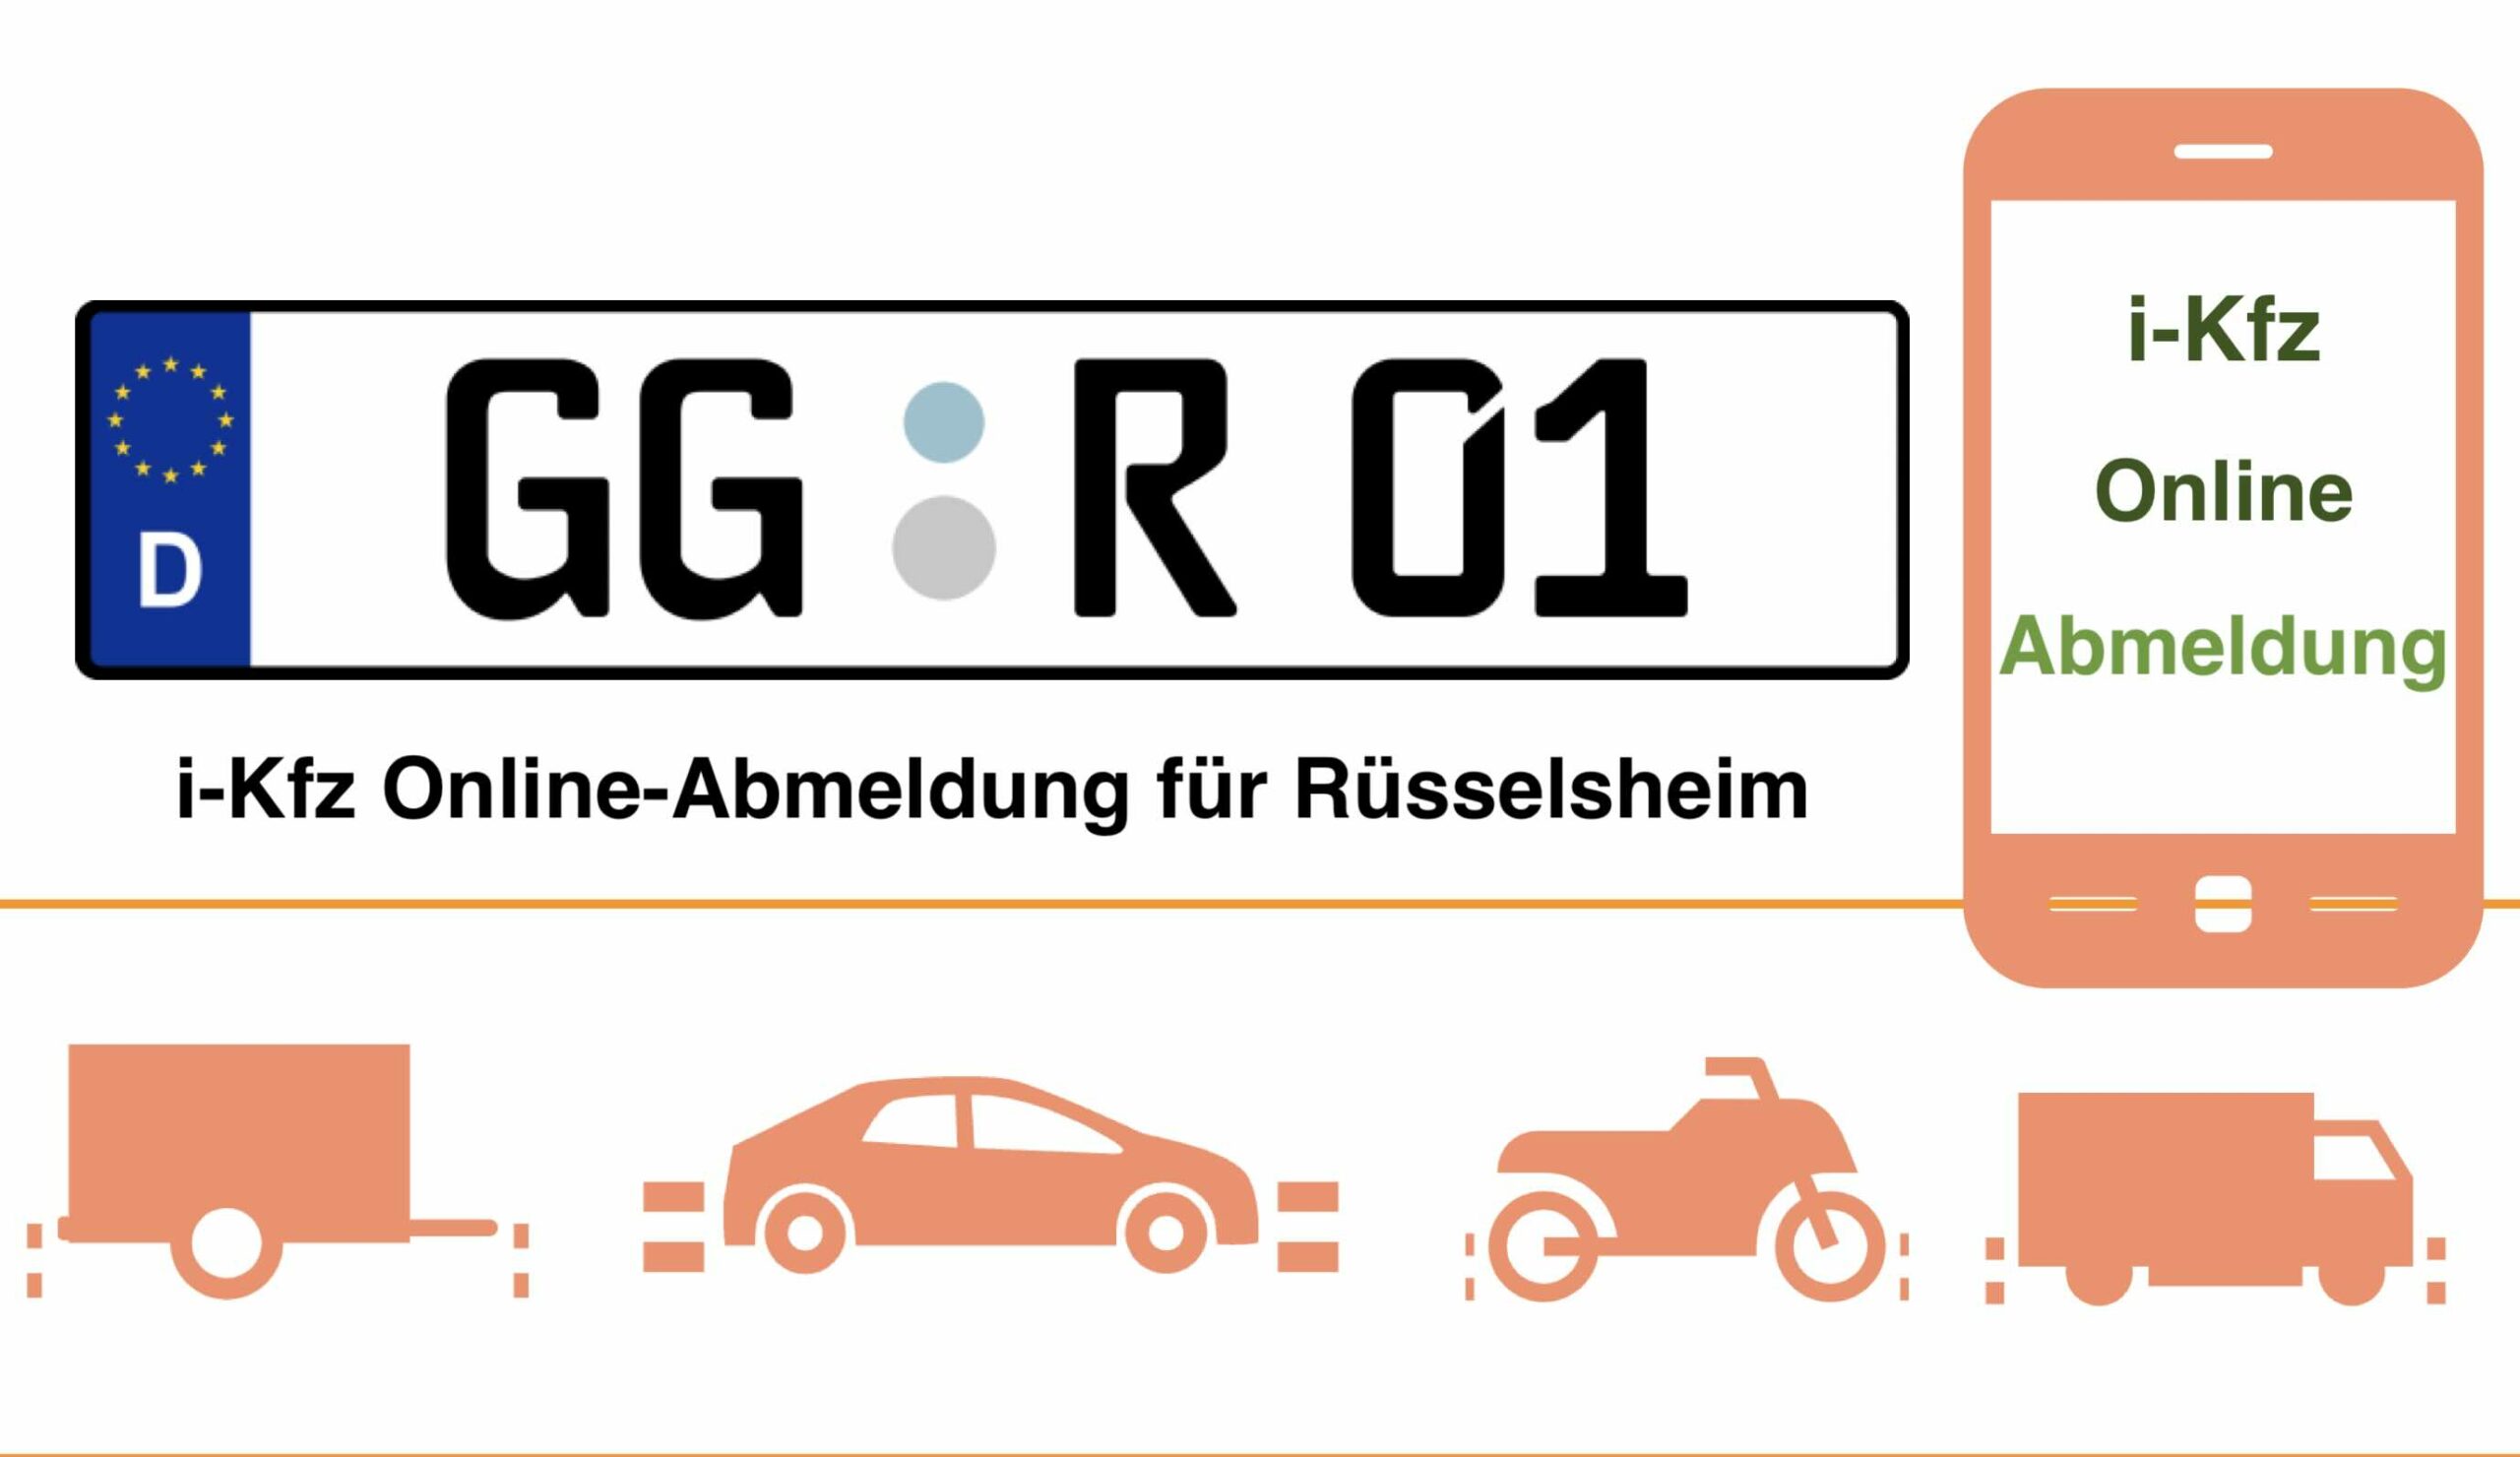 Online-Abmeldung für Rüsselsheim